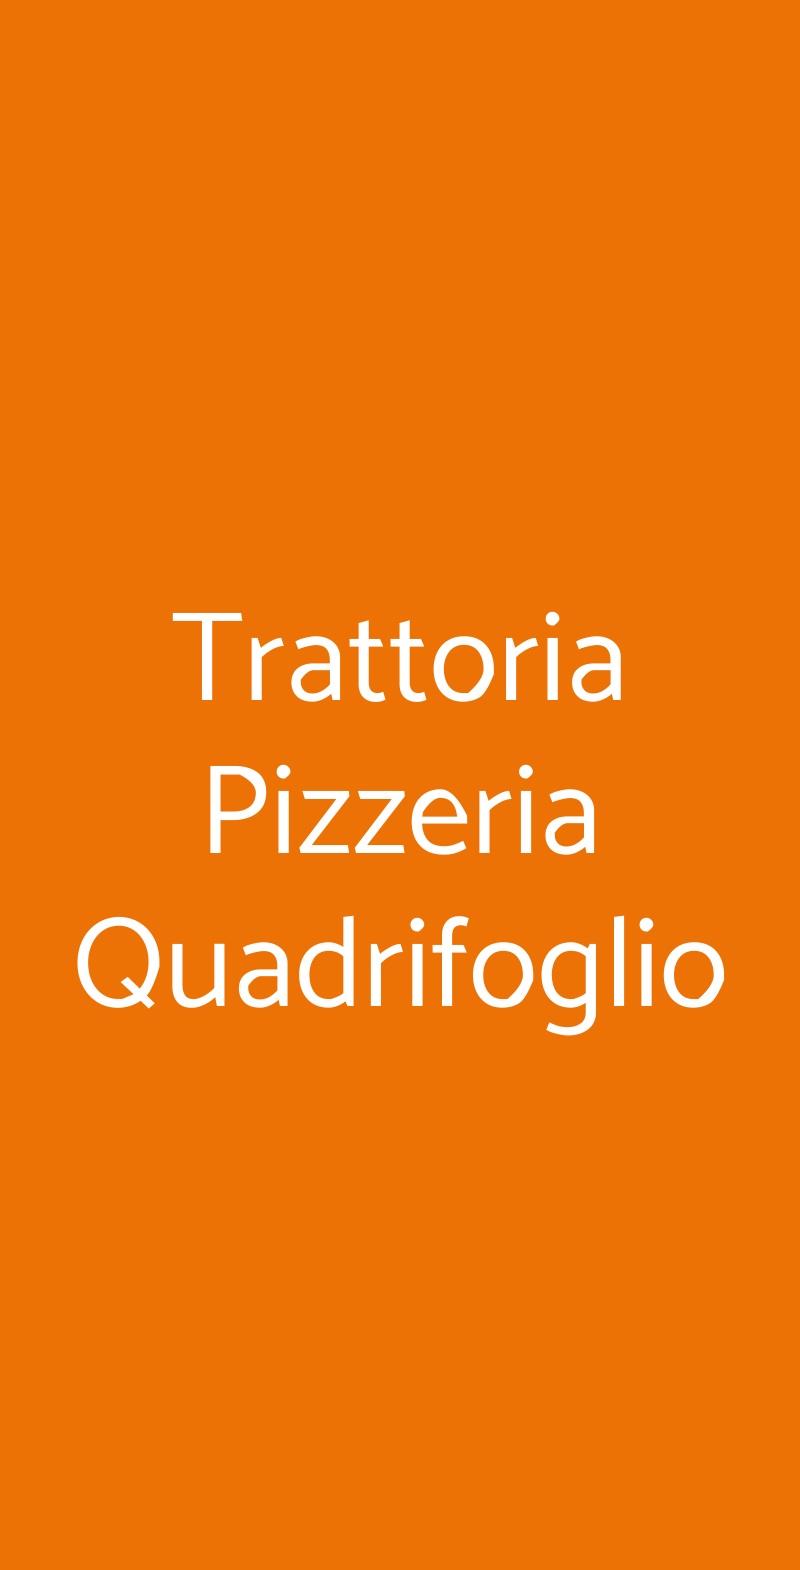 Trattoria Pizzeria Quadrifoglio Milano menù 1 pagina